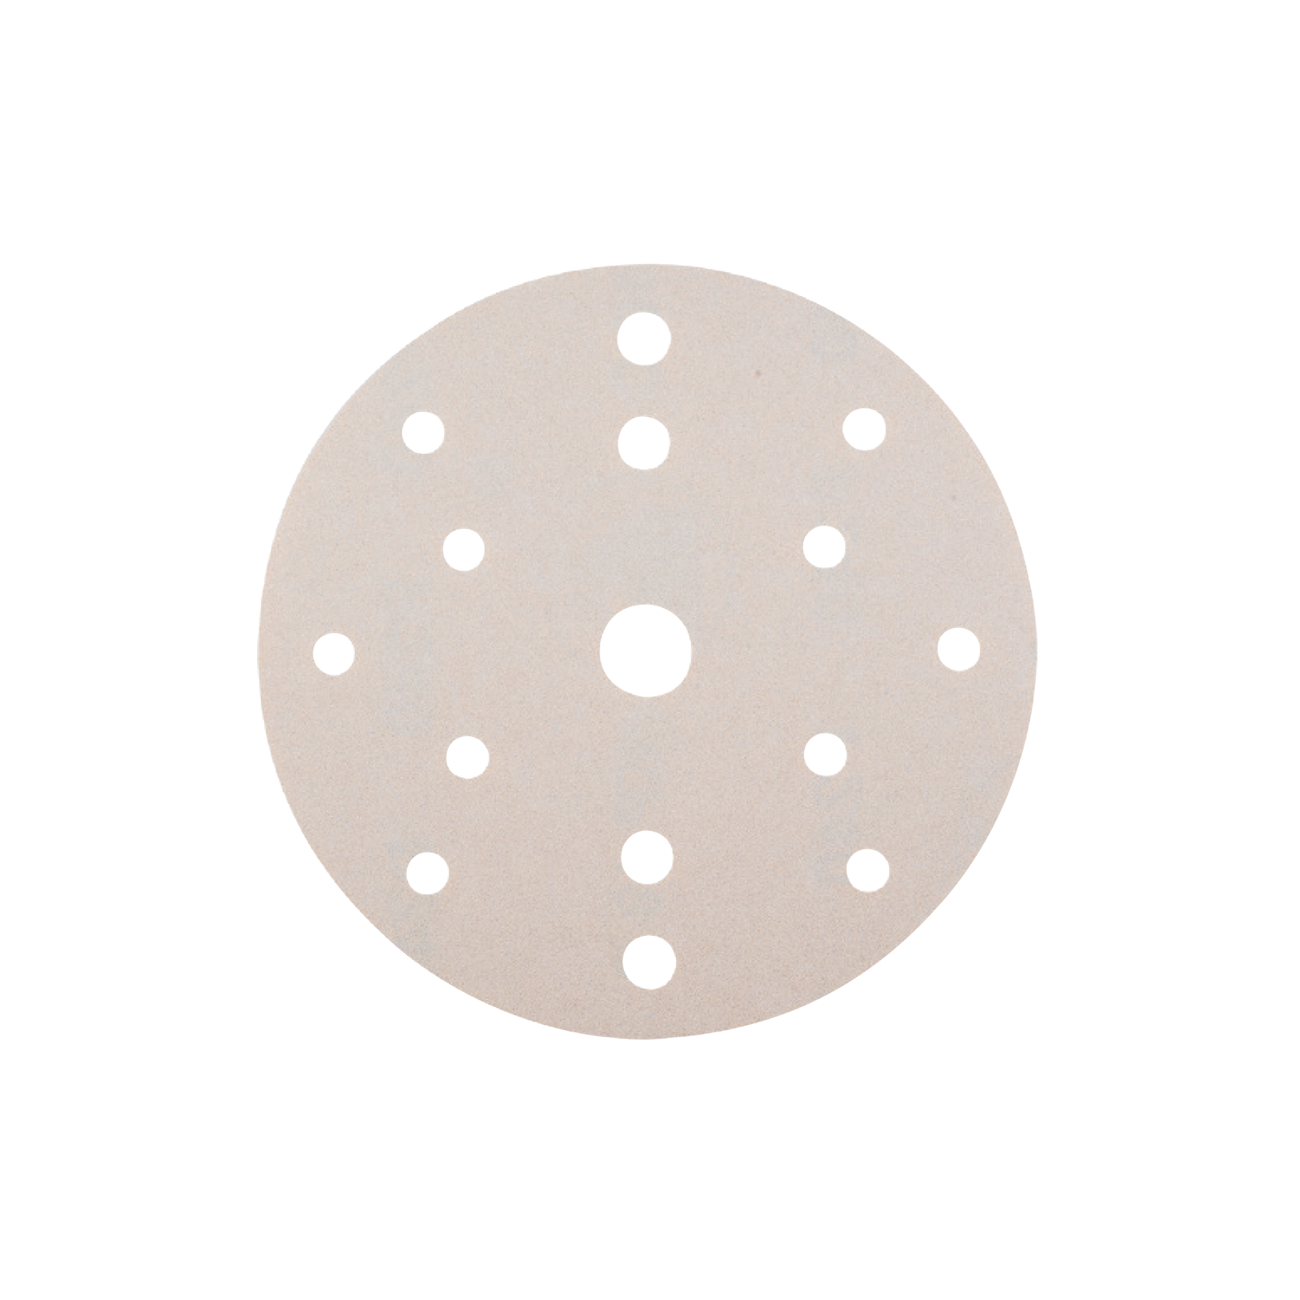 Disc din Hartie Abrazive pe Suport Velcro din Panza pentru Lemn - Skp Velcro, R 150, 8 + 6 + 1 Perforatii, Gr. 80